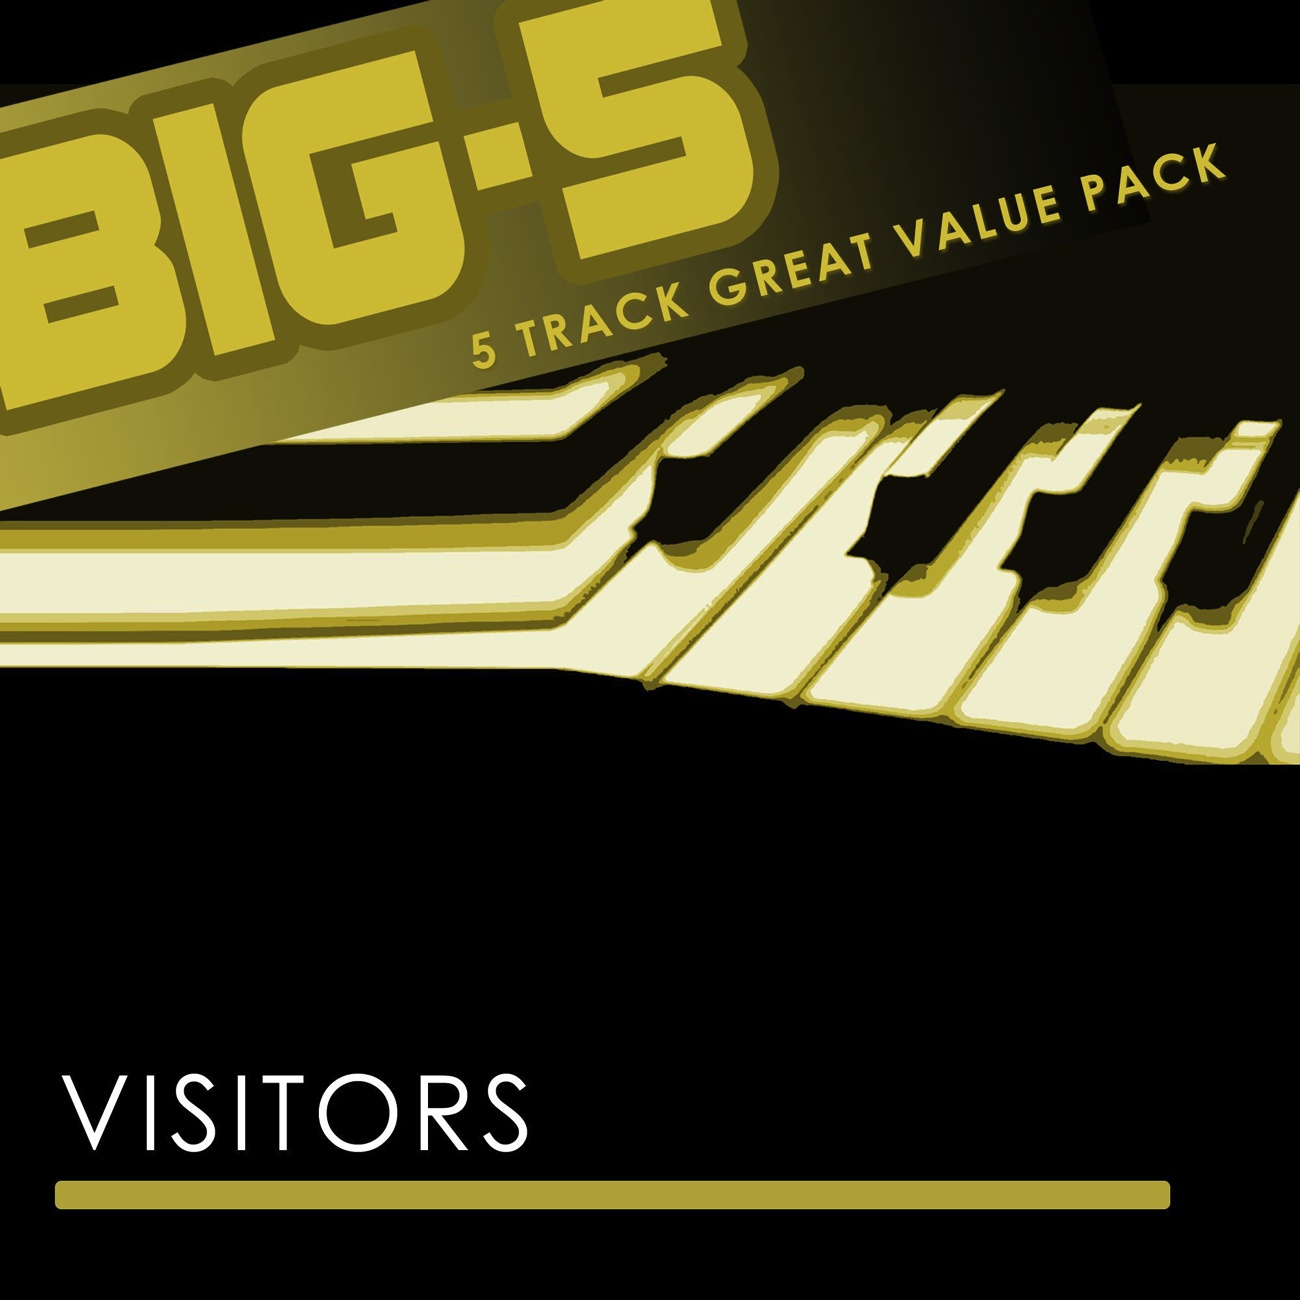 Big-5 : Visitors